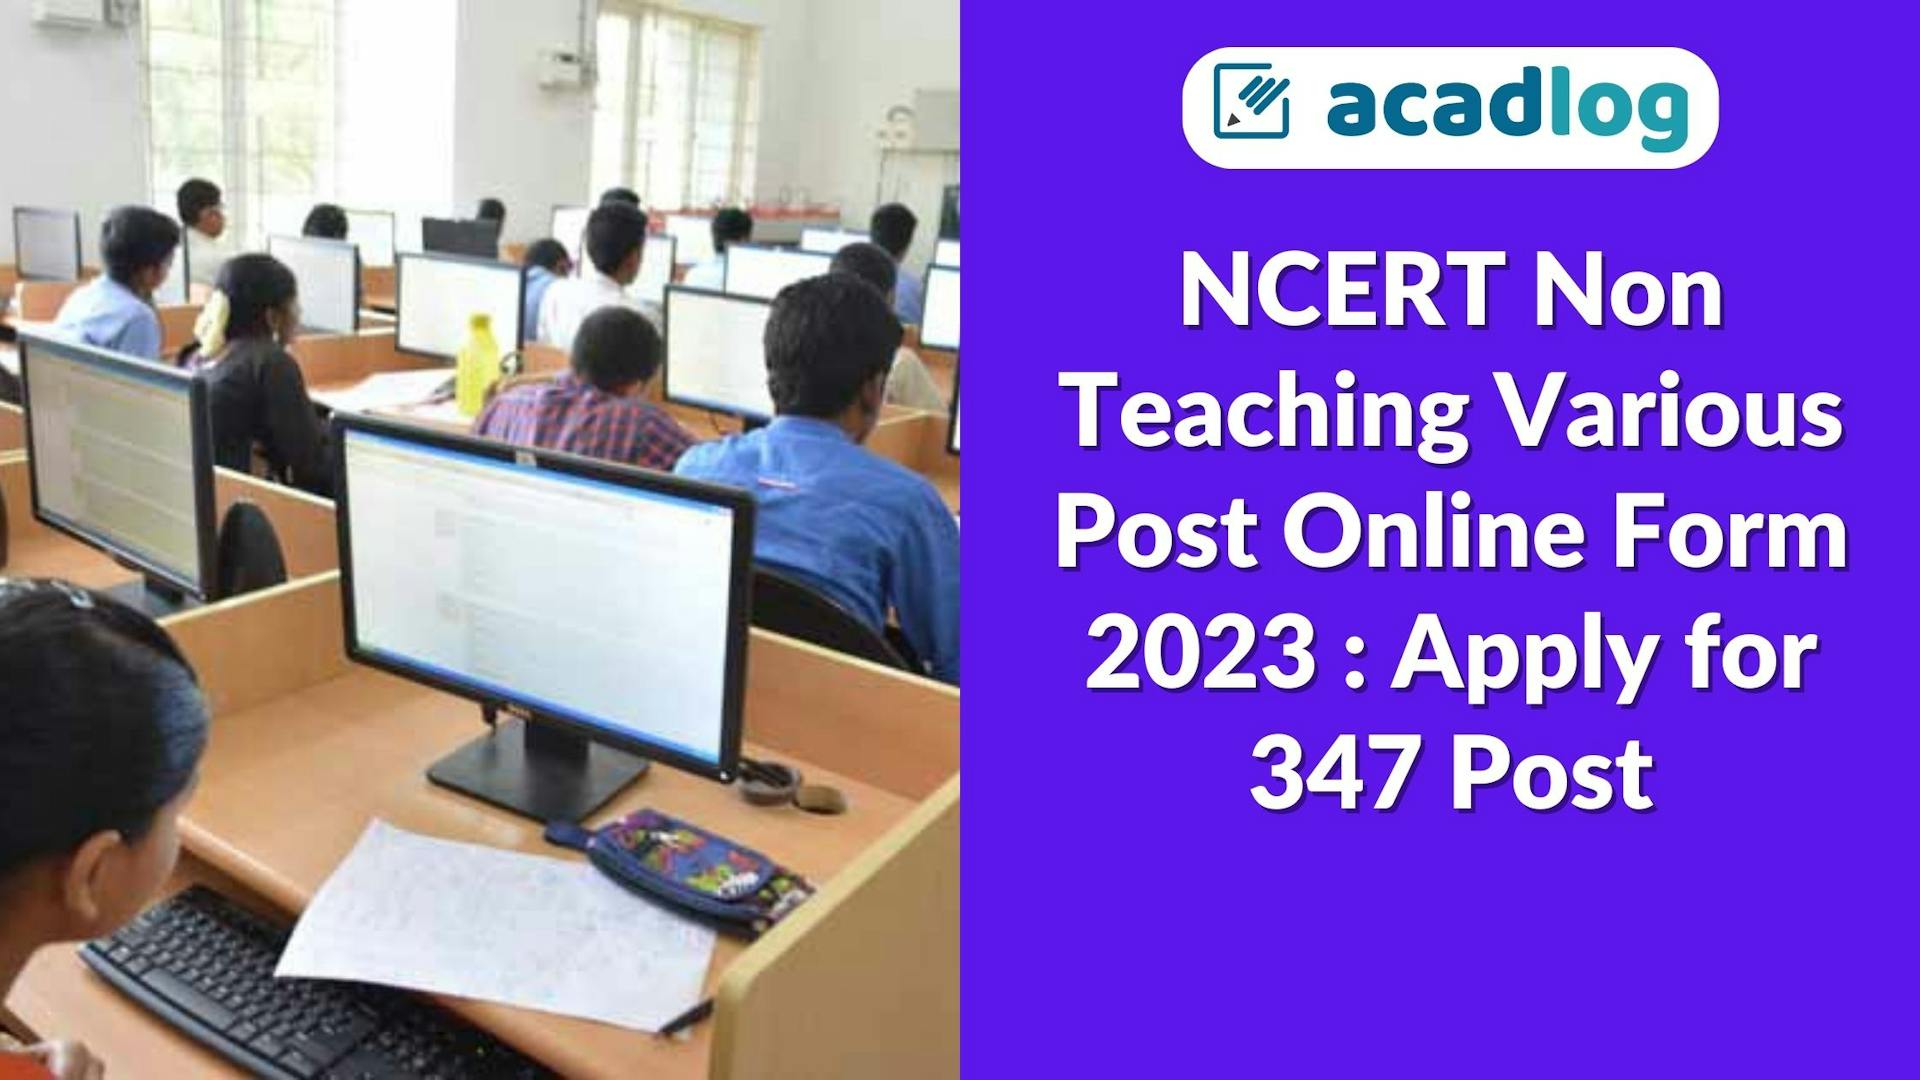 Acadlog: NCERT Non Teaching Recruitment 2023 Apply Online for 347 Various Post